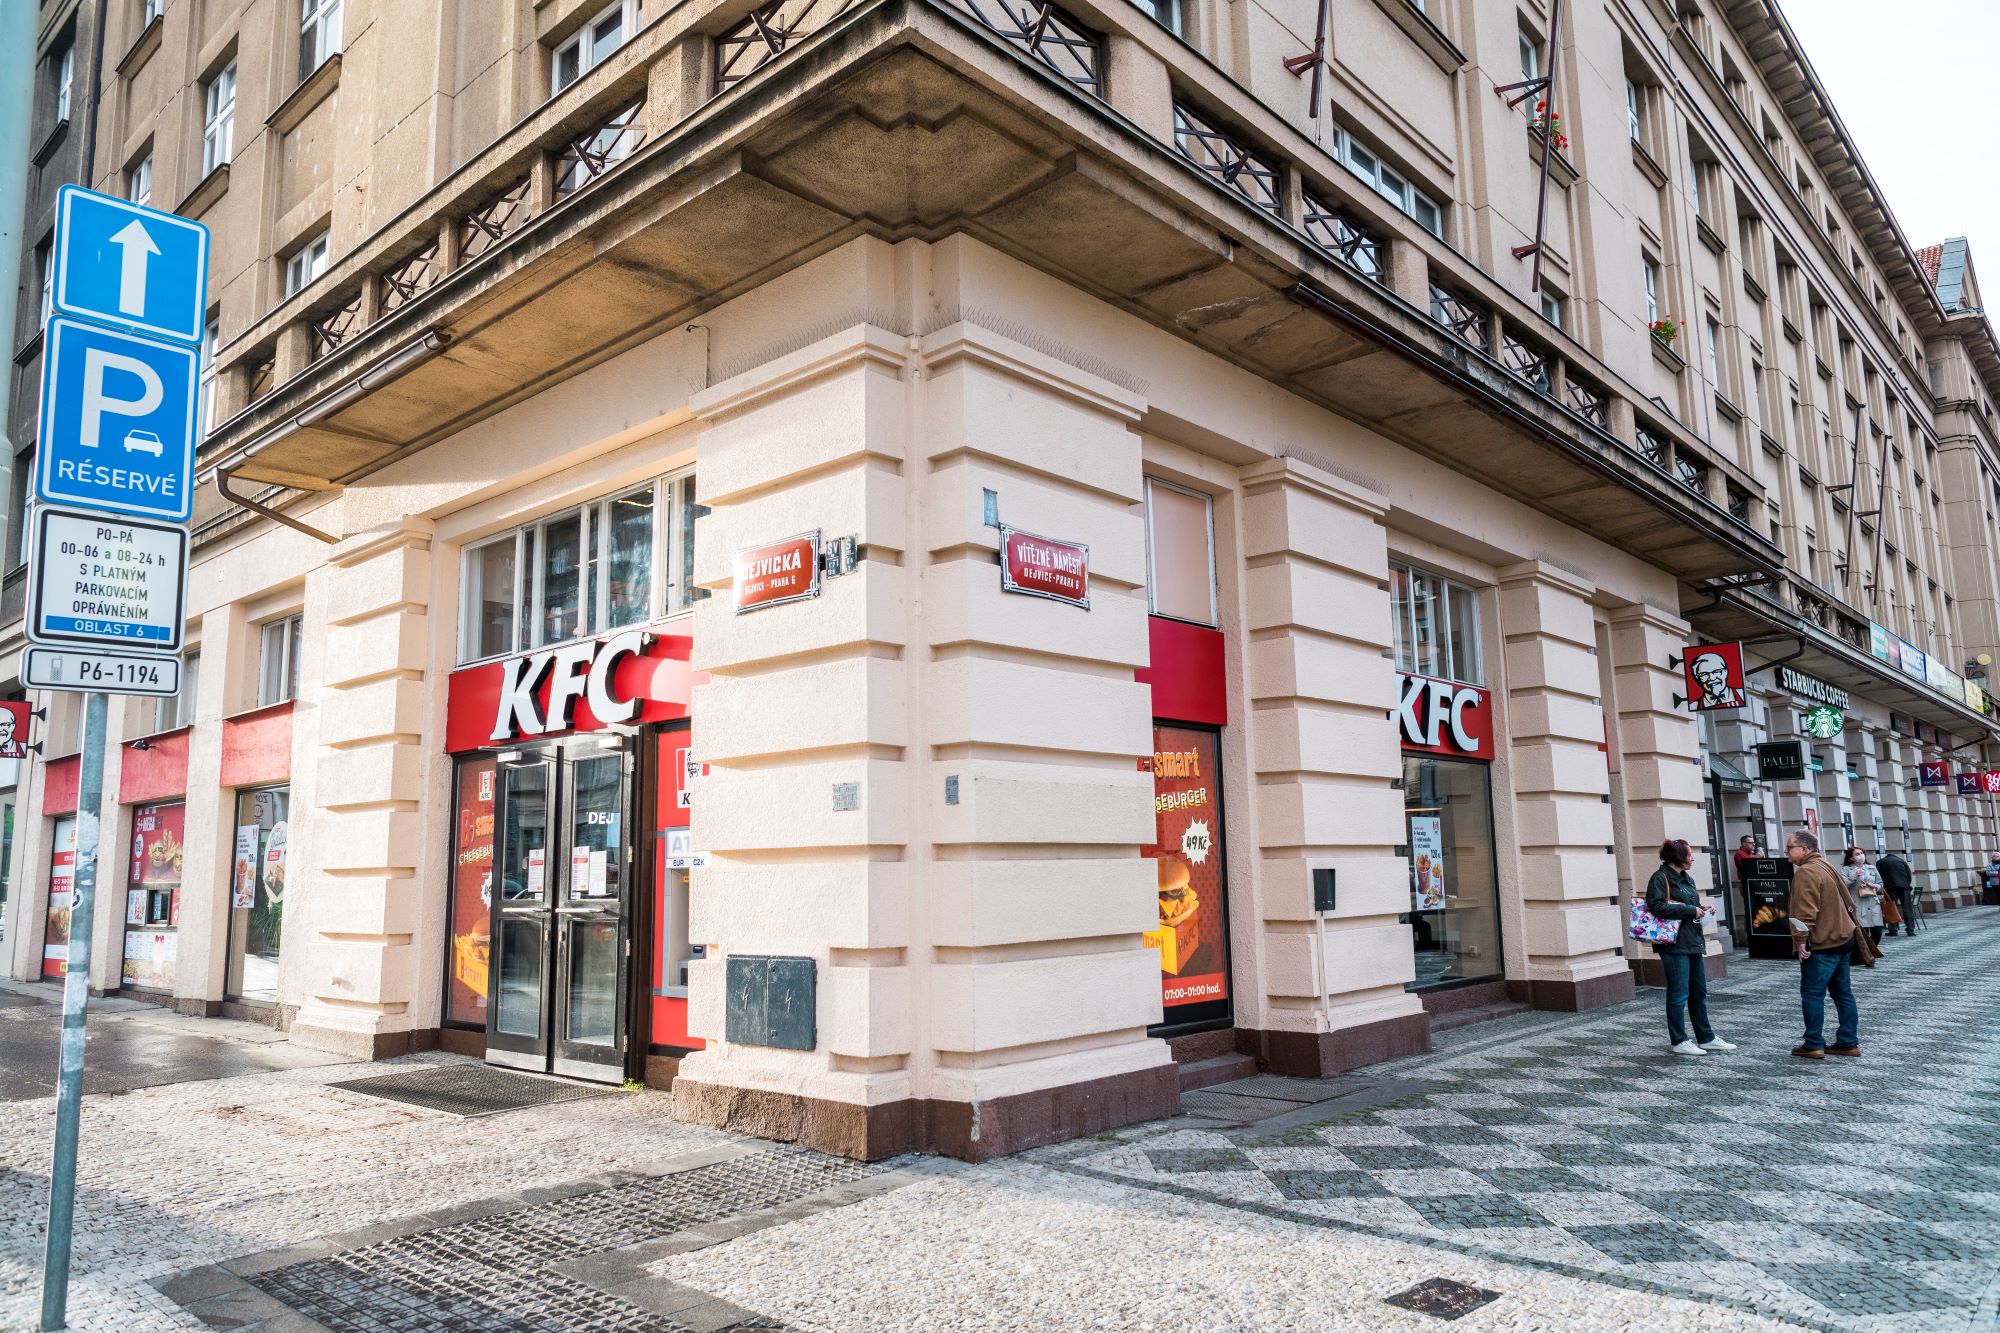 KFC v Česku dál roste. V minulém roce v restauracích obsloužili25 milionů zákazníků